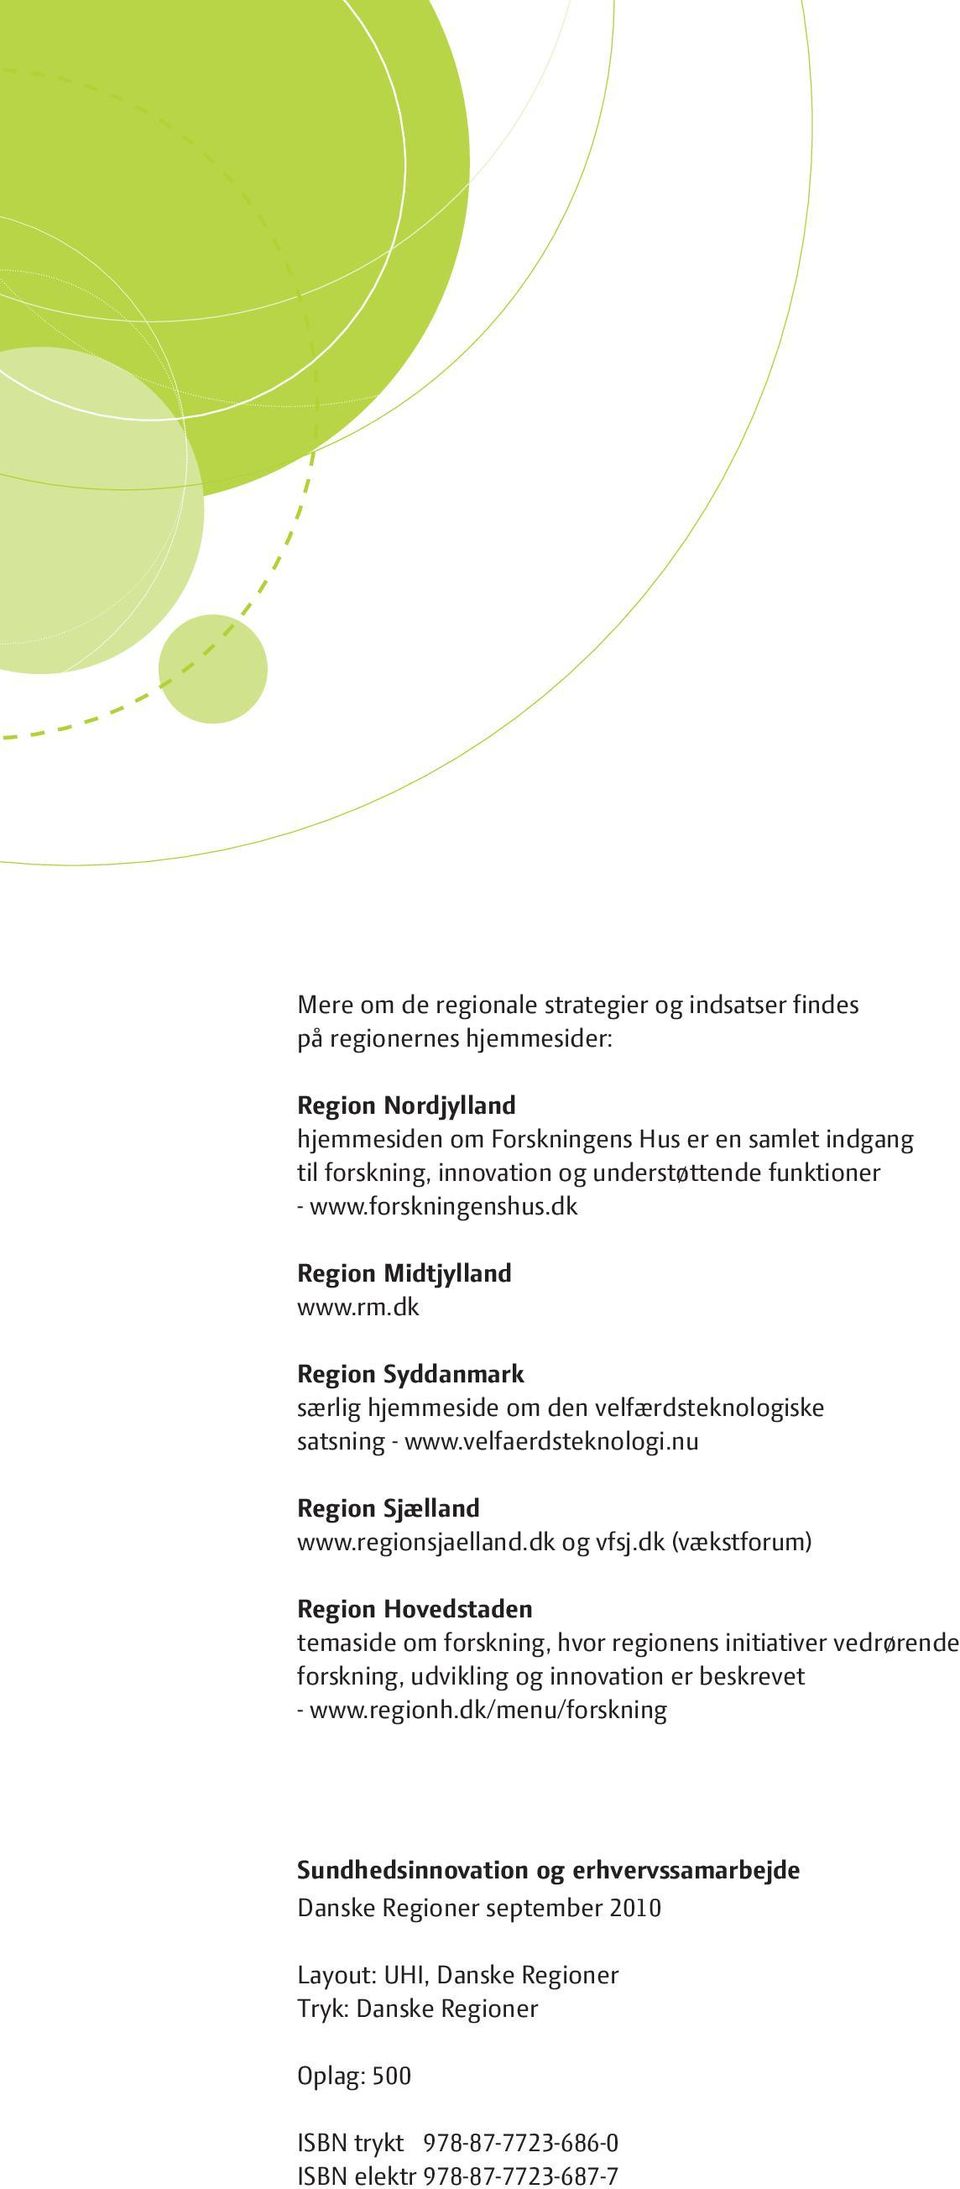 nu Region Sjælland www.regionsjaelland.dk og vfsj.